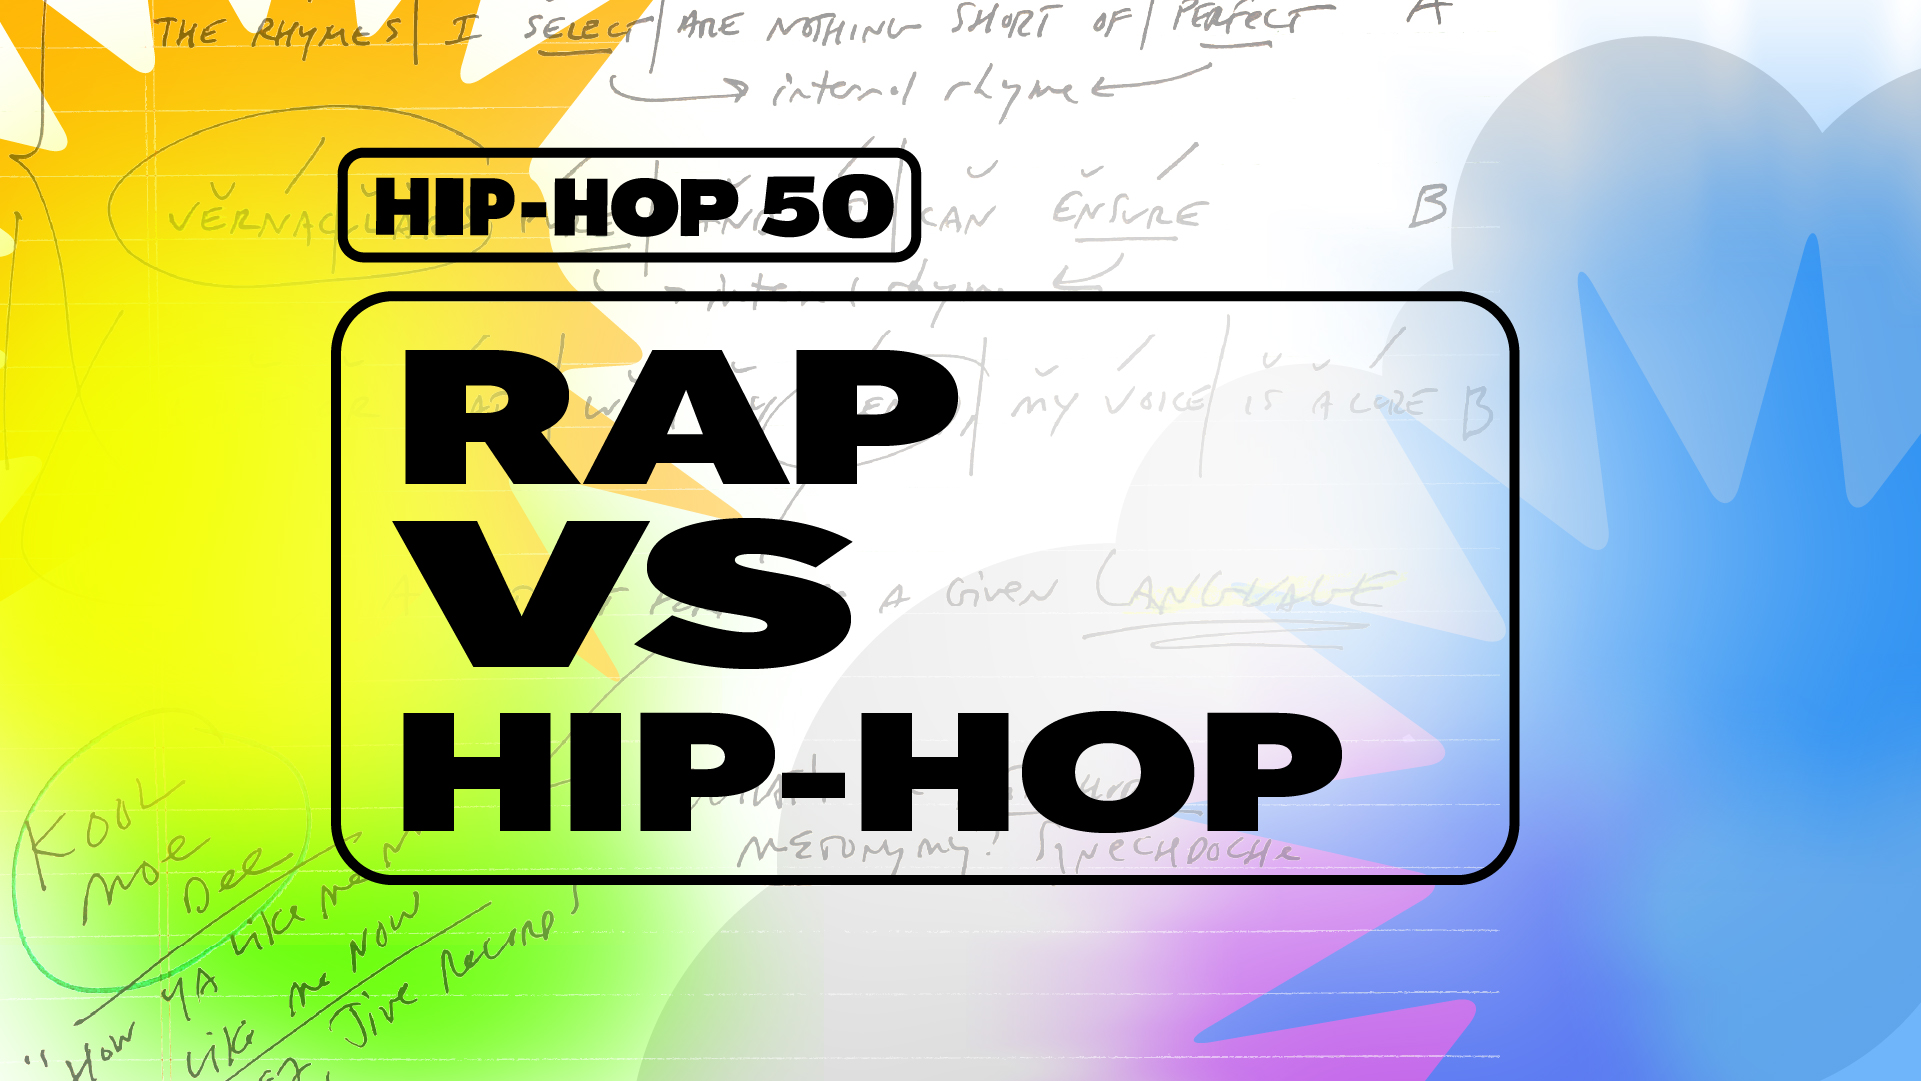 Hip-hop, Definition, History, Dance, Rap, Music, Culture, & Facts